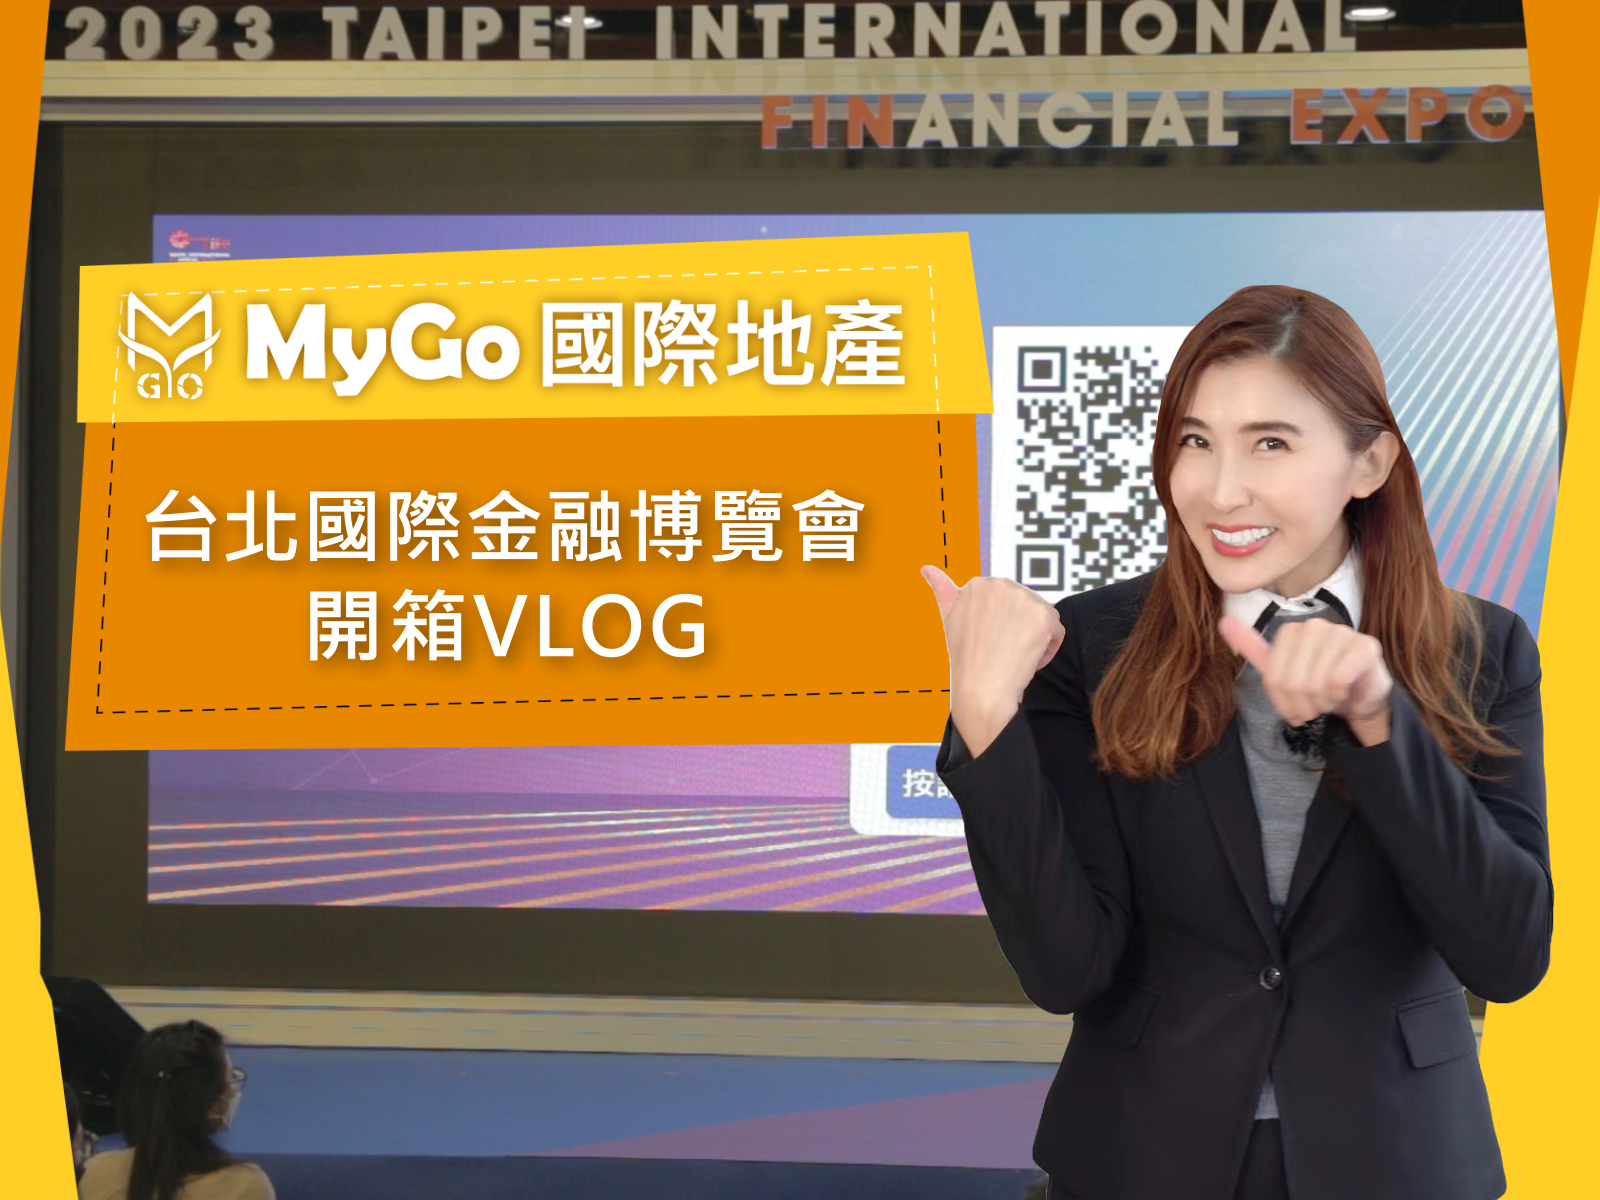 MyGo國際地產之台北國際金融博覽會開箱VLOG